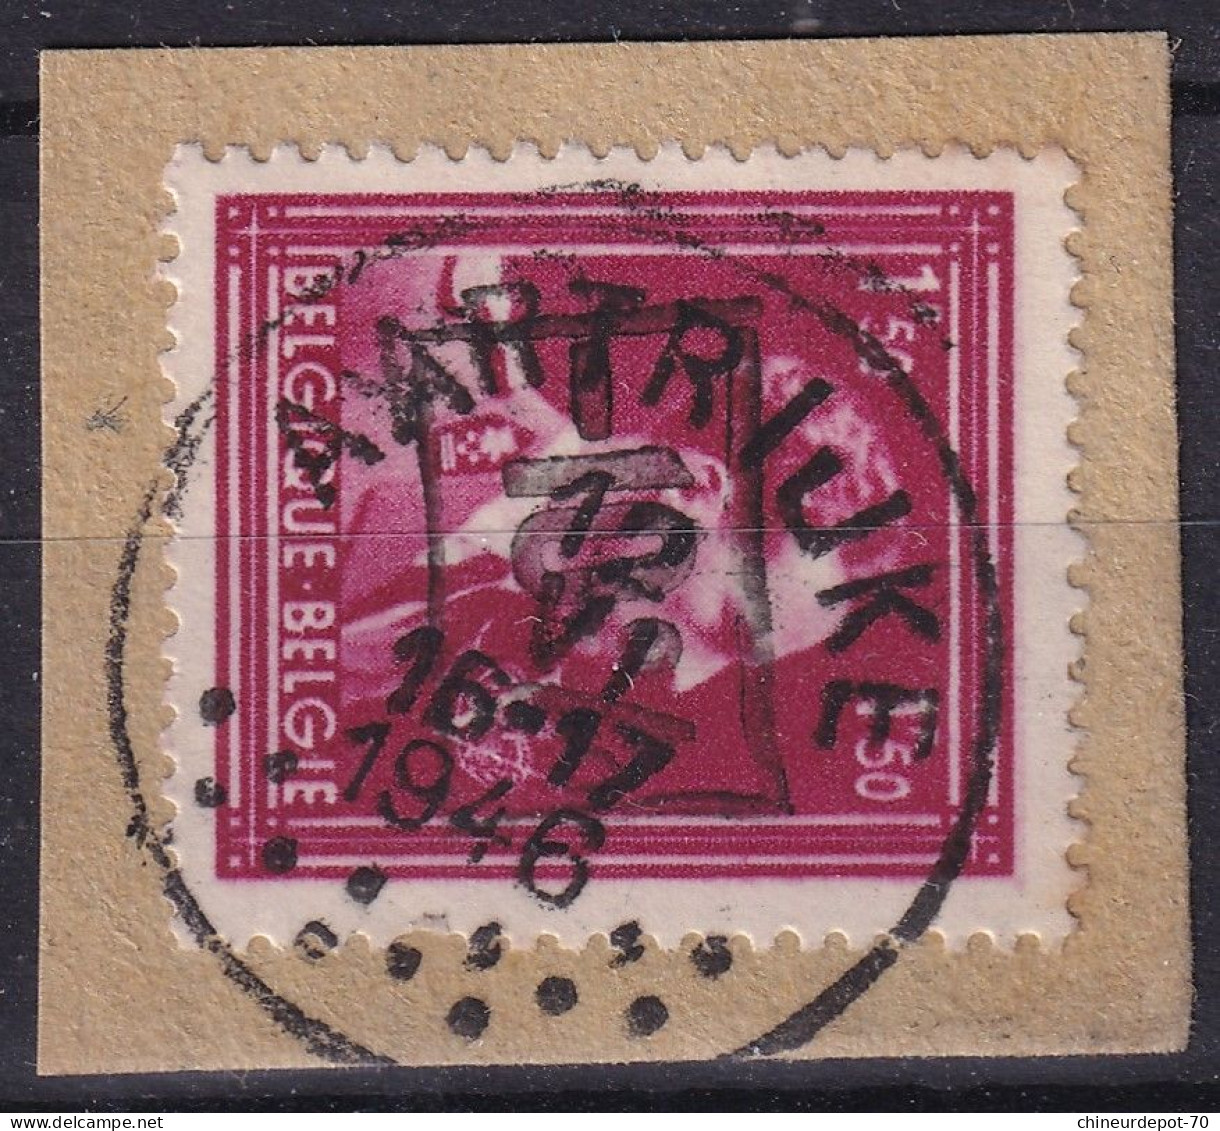 Timbre Belge ROI KING  CACHET AARTRIJKE 1946 - Oblitérés